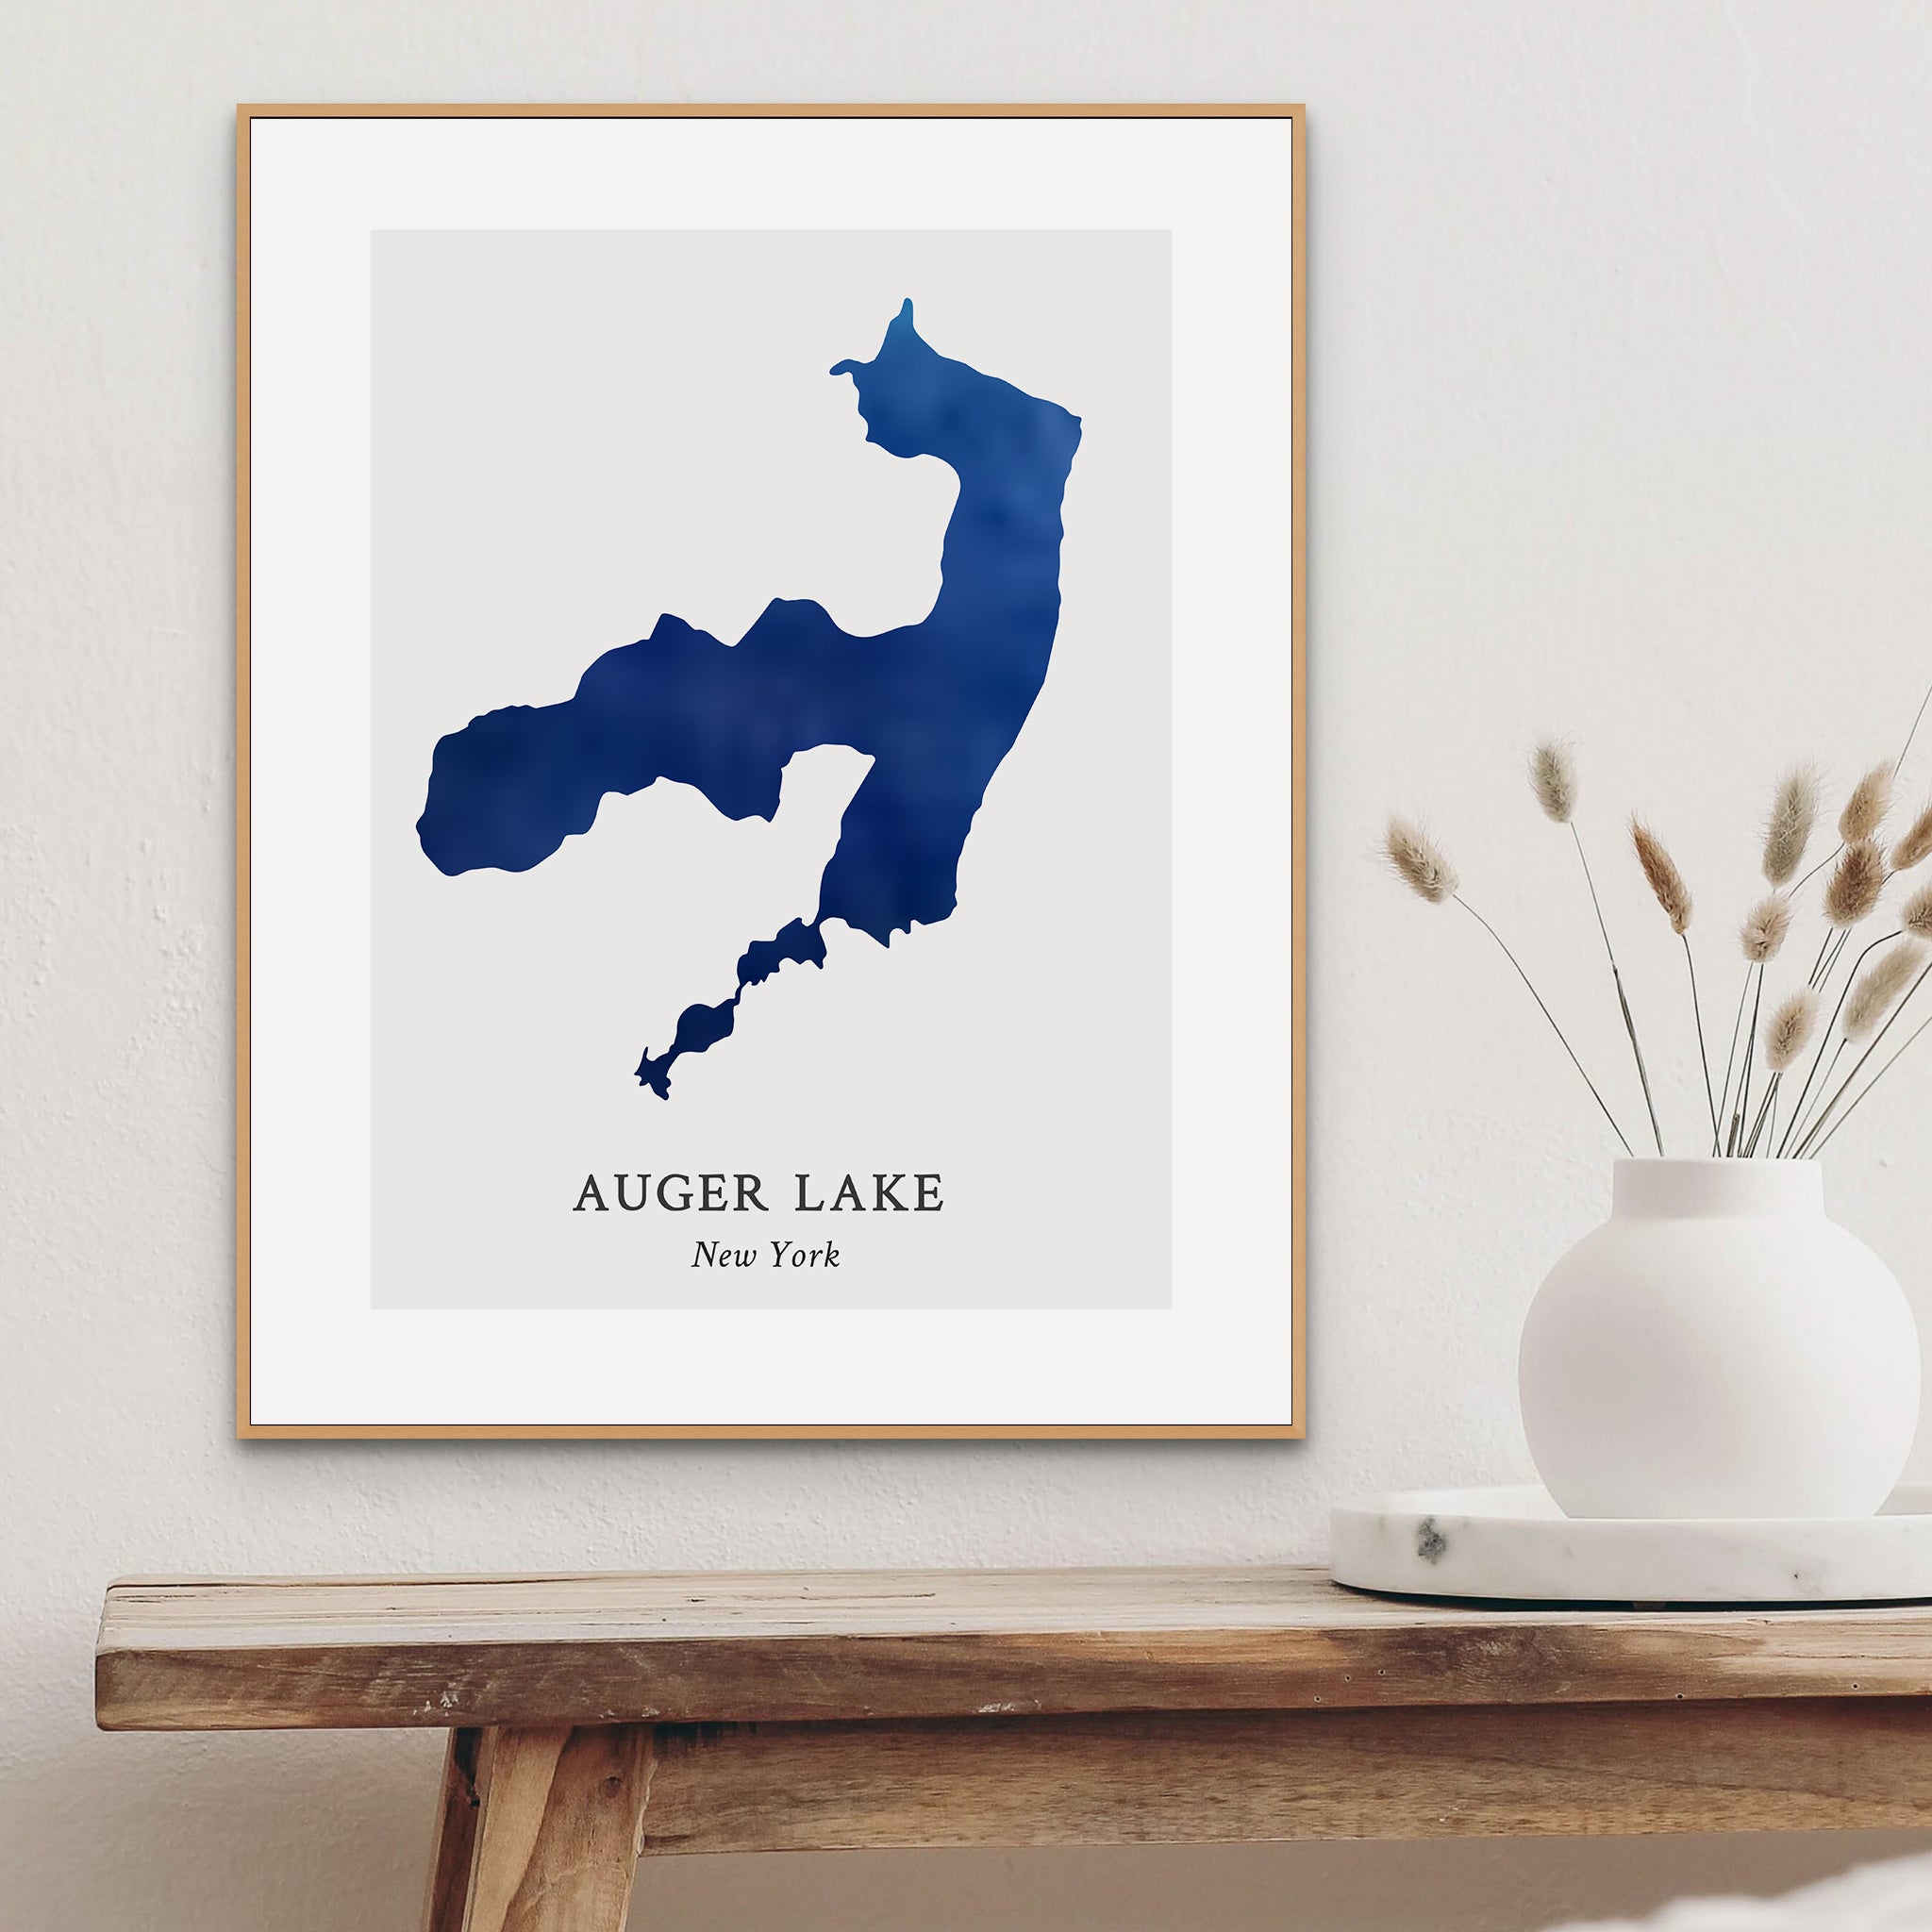 New York - Lake Augur